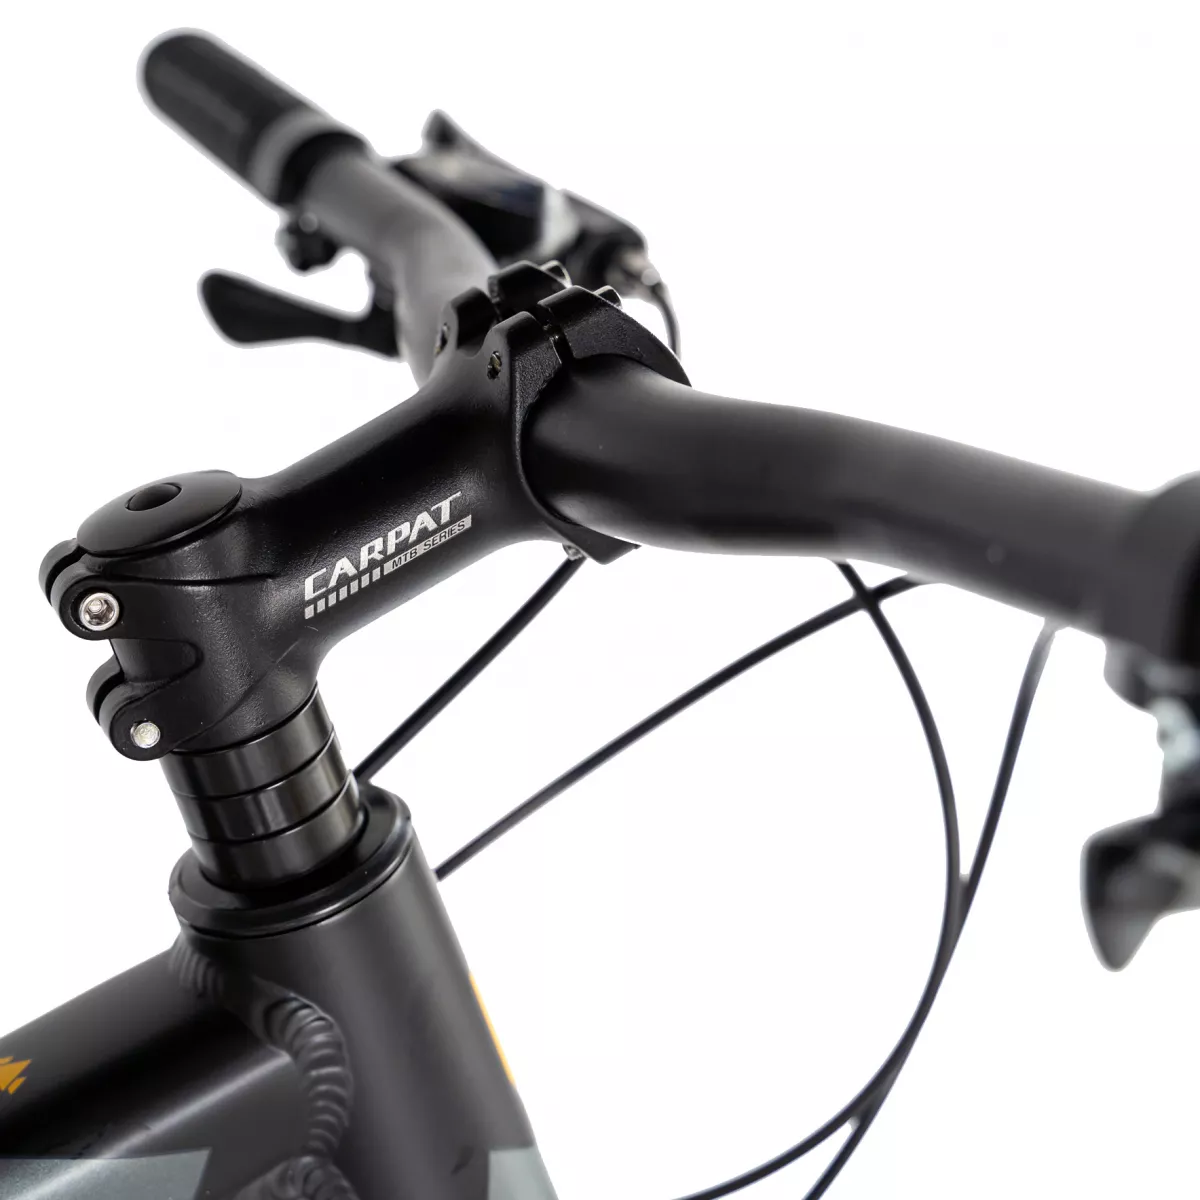 Bicicleta MTB-HT Carpat C2670C, roata 26", cadru aluminiu, 21 viteze, culoare negru/galben